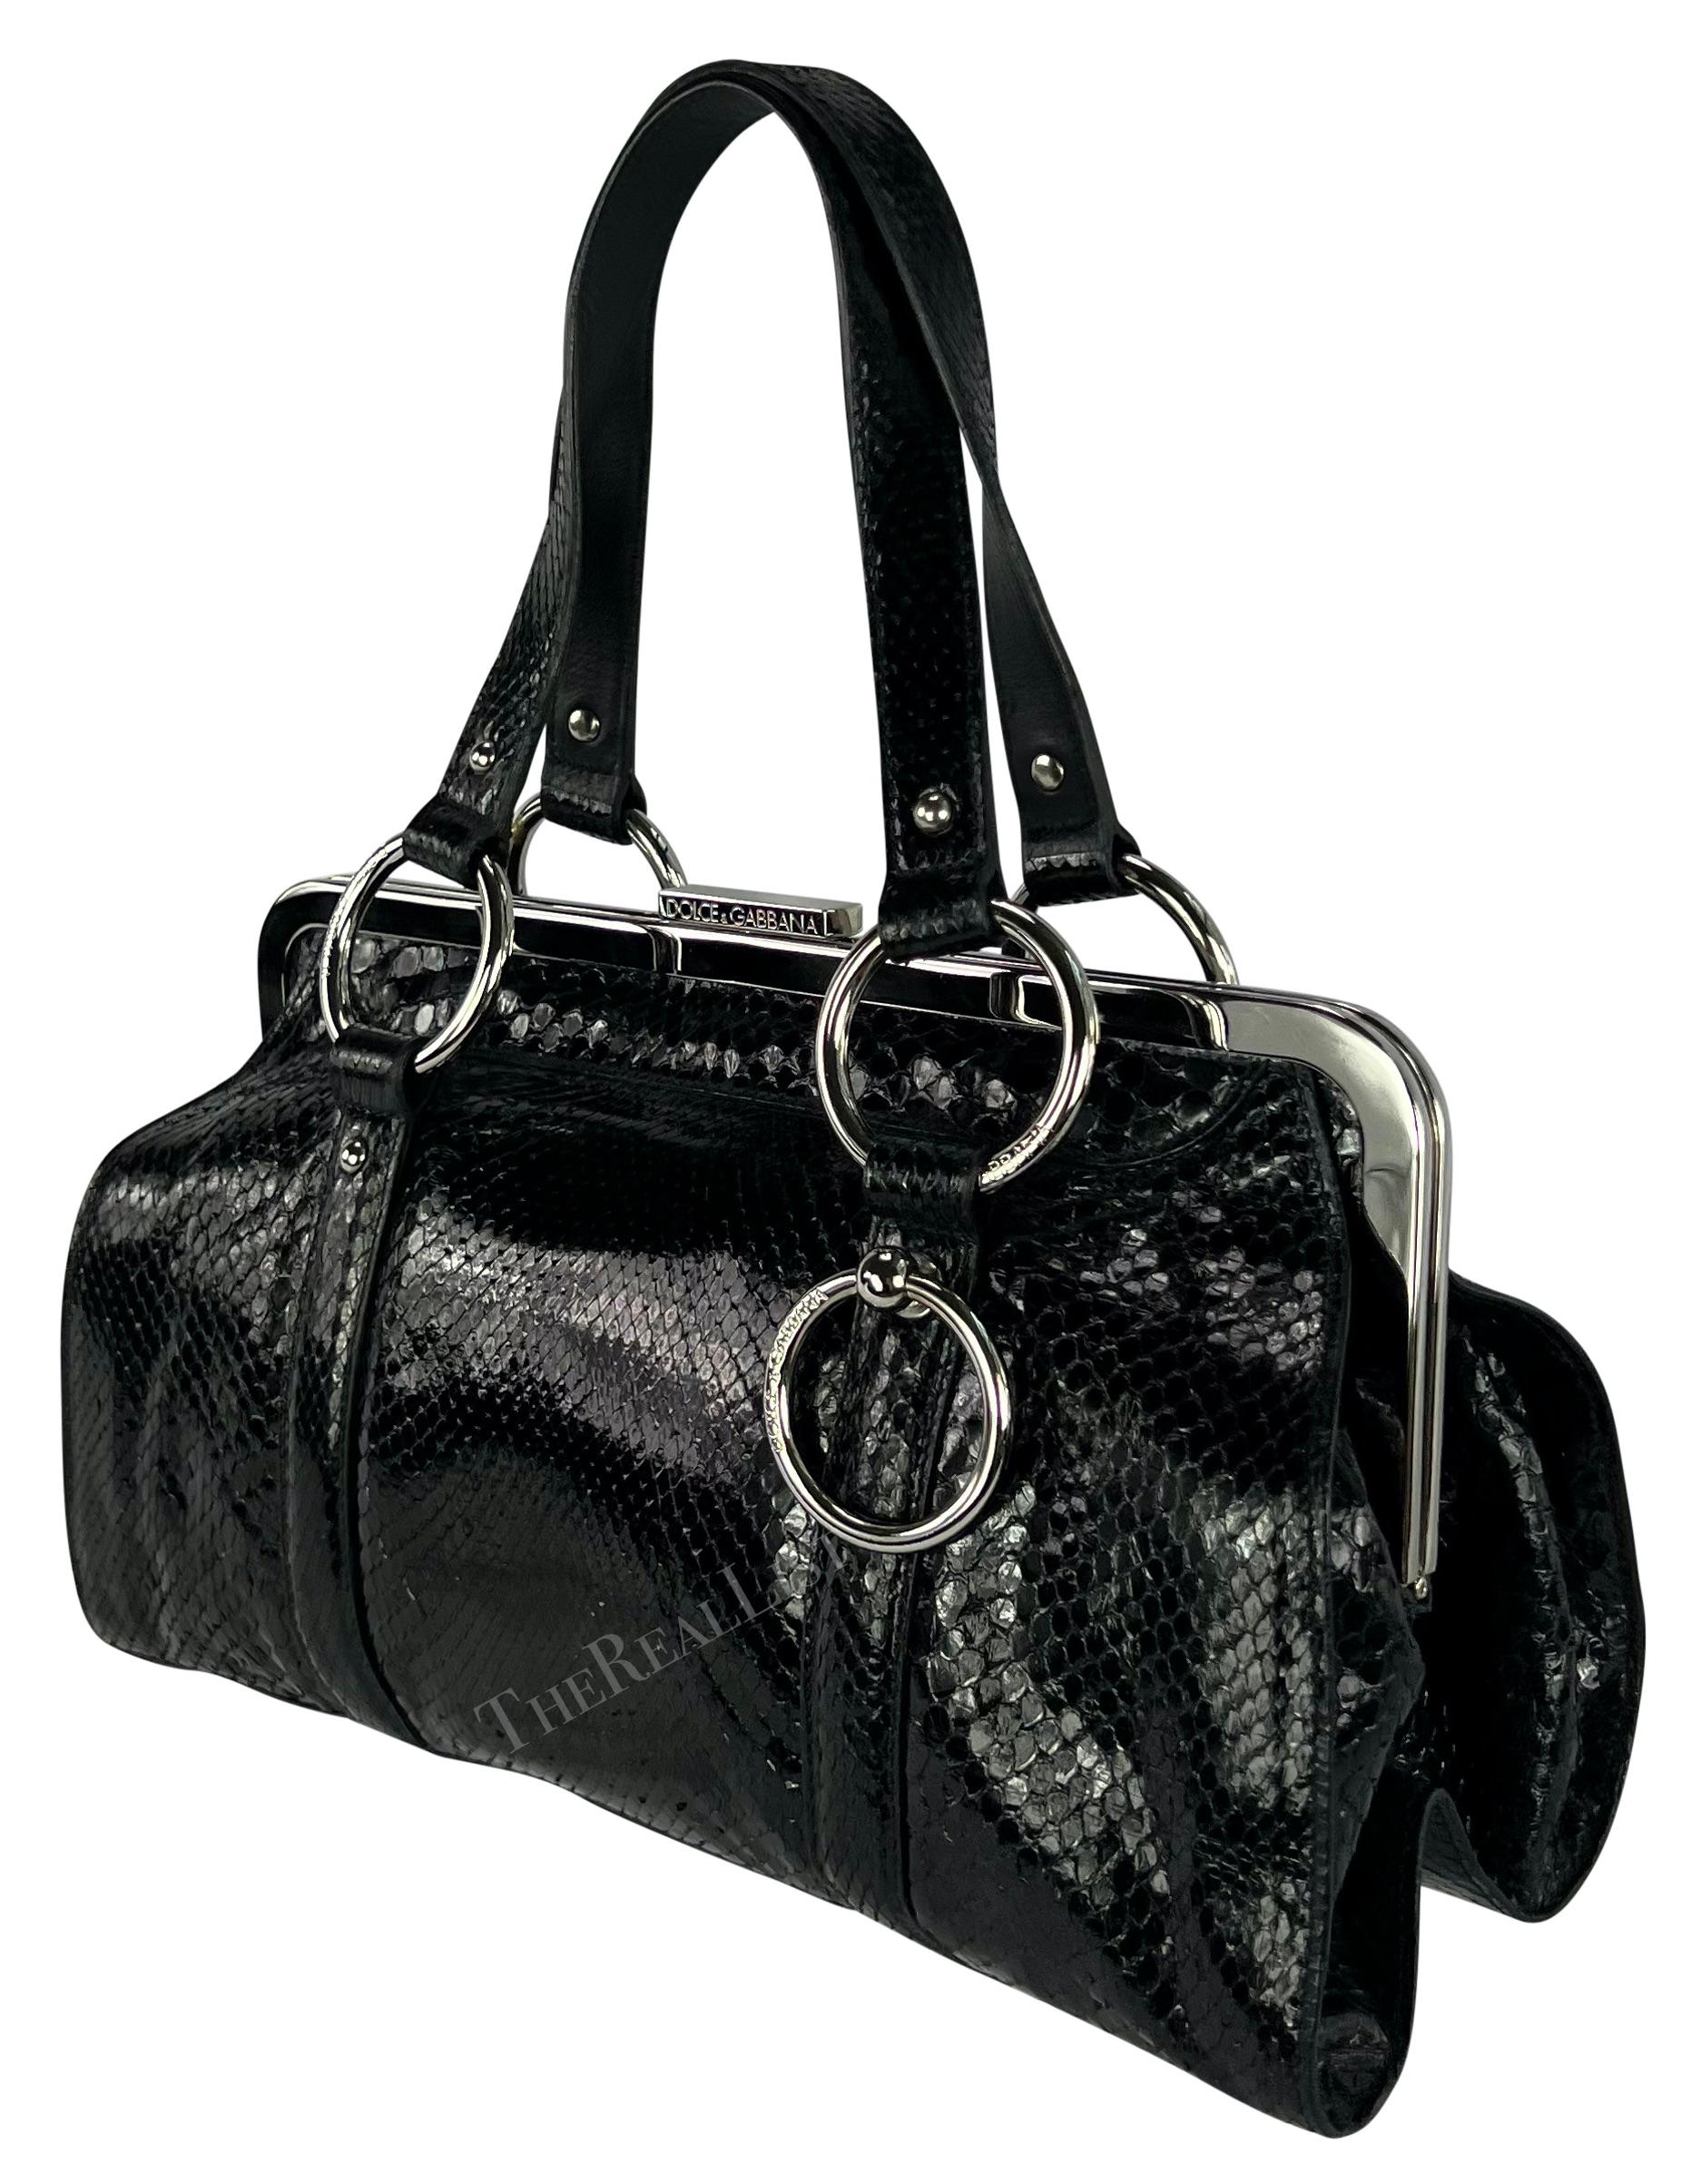 S/S 2003 Dolce & Gabbana Runway Black Python Leather Ring Shoulder Bag For Sale 2